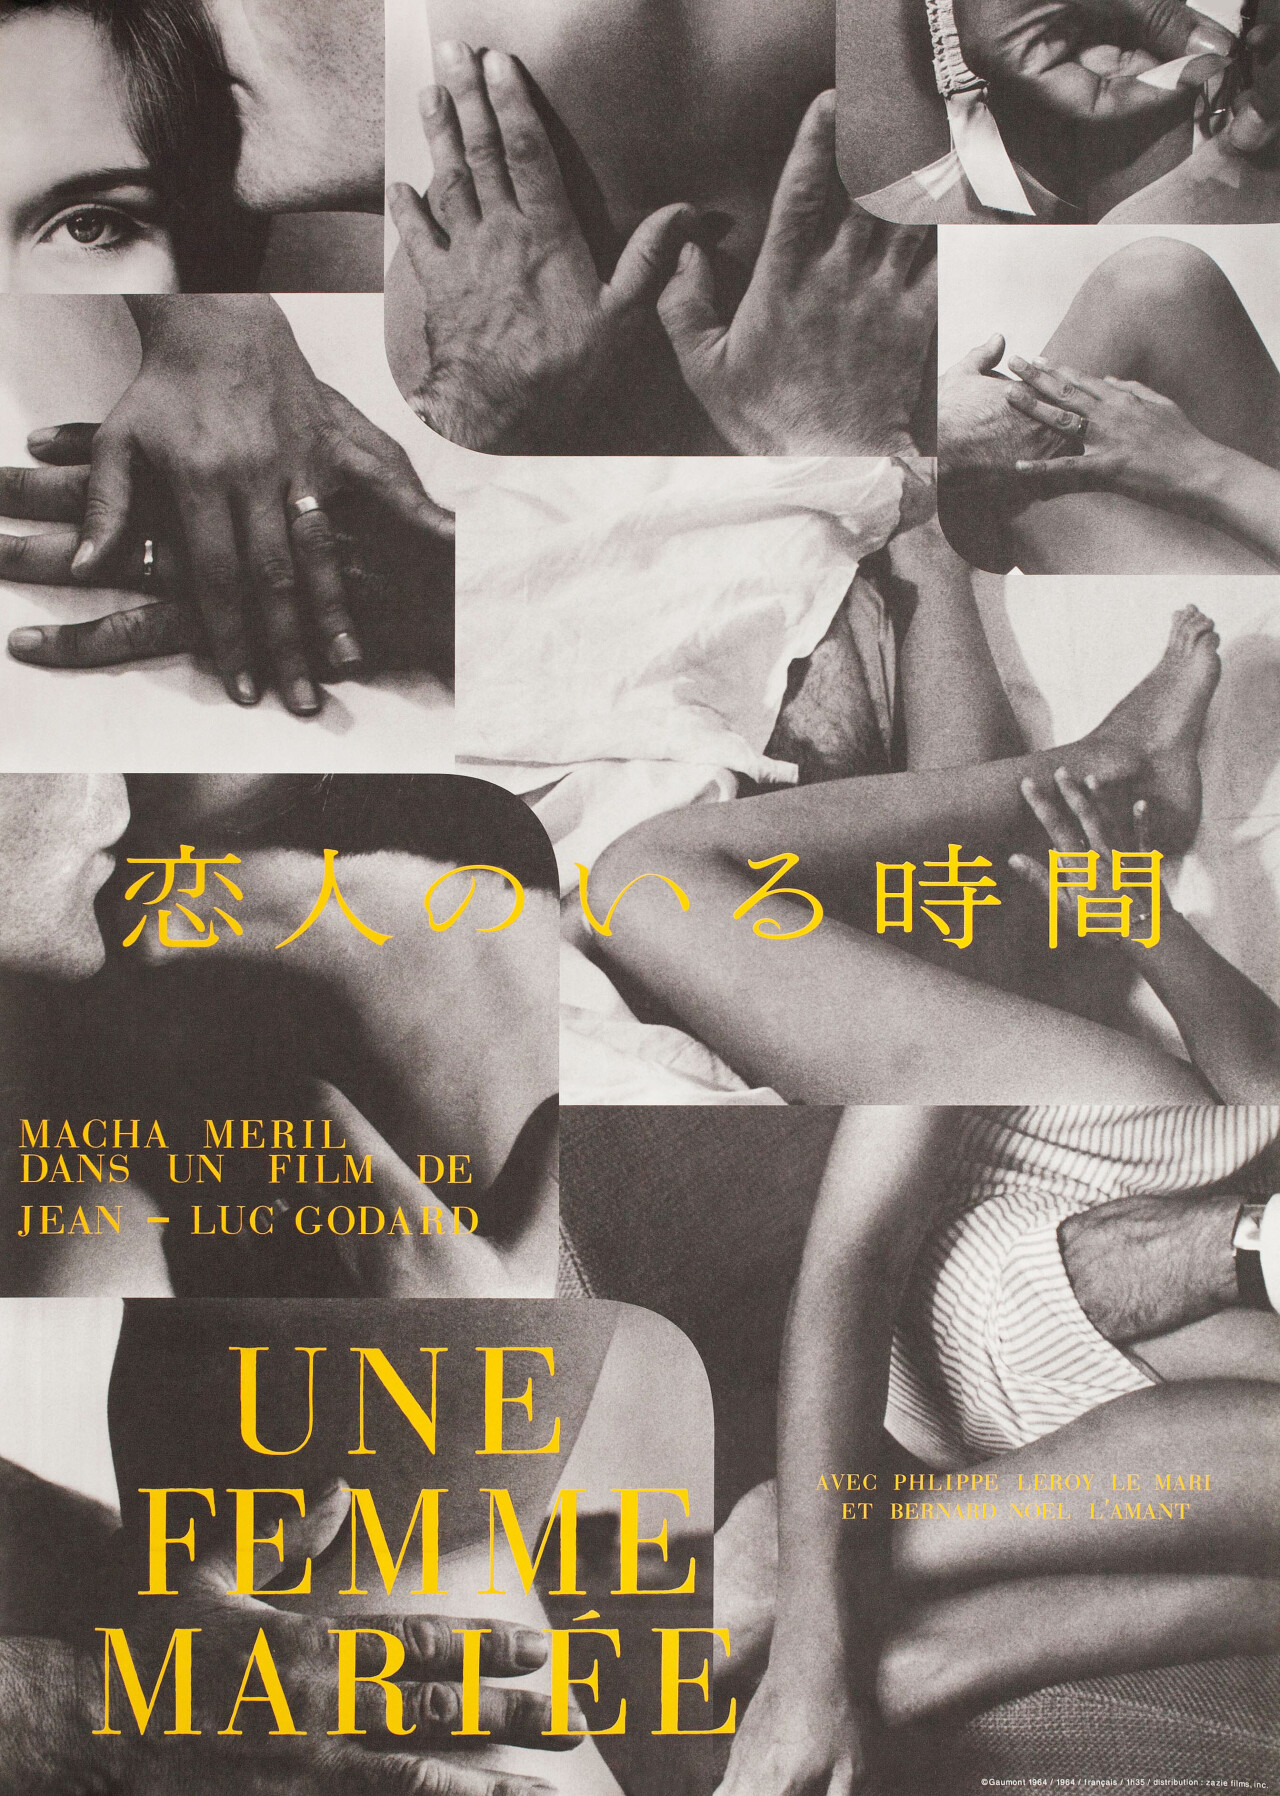 Замужняя женщина (A Married Woman, 1964), режиссёр Жан-Люк Годар, минималистичный постер к фильму (Япония, 1997 год)_1